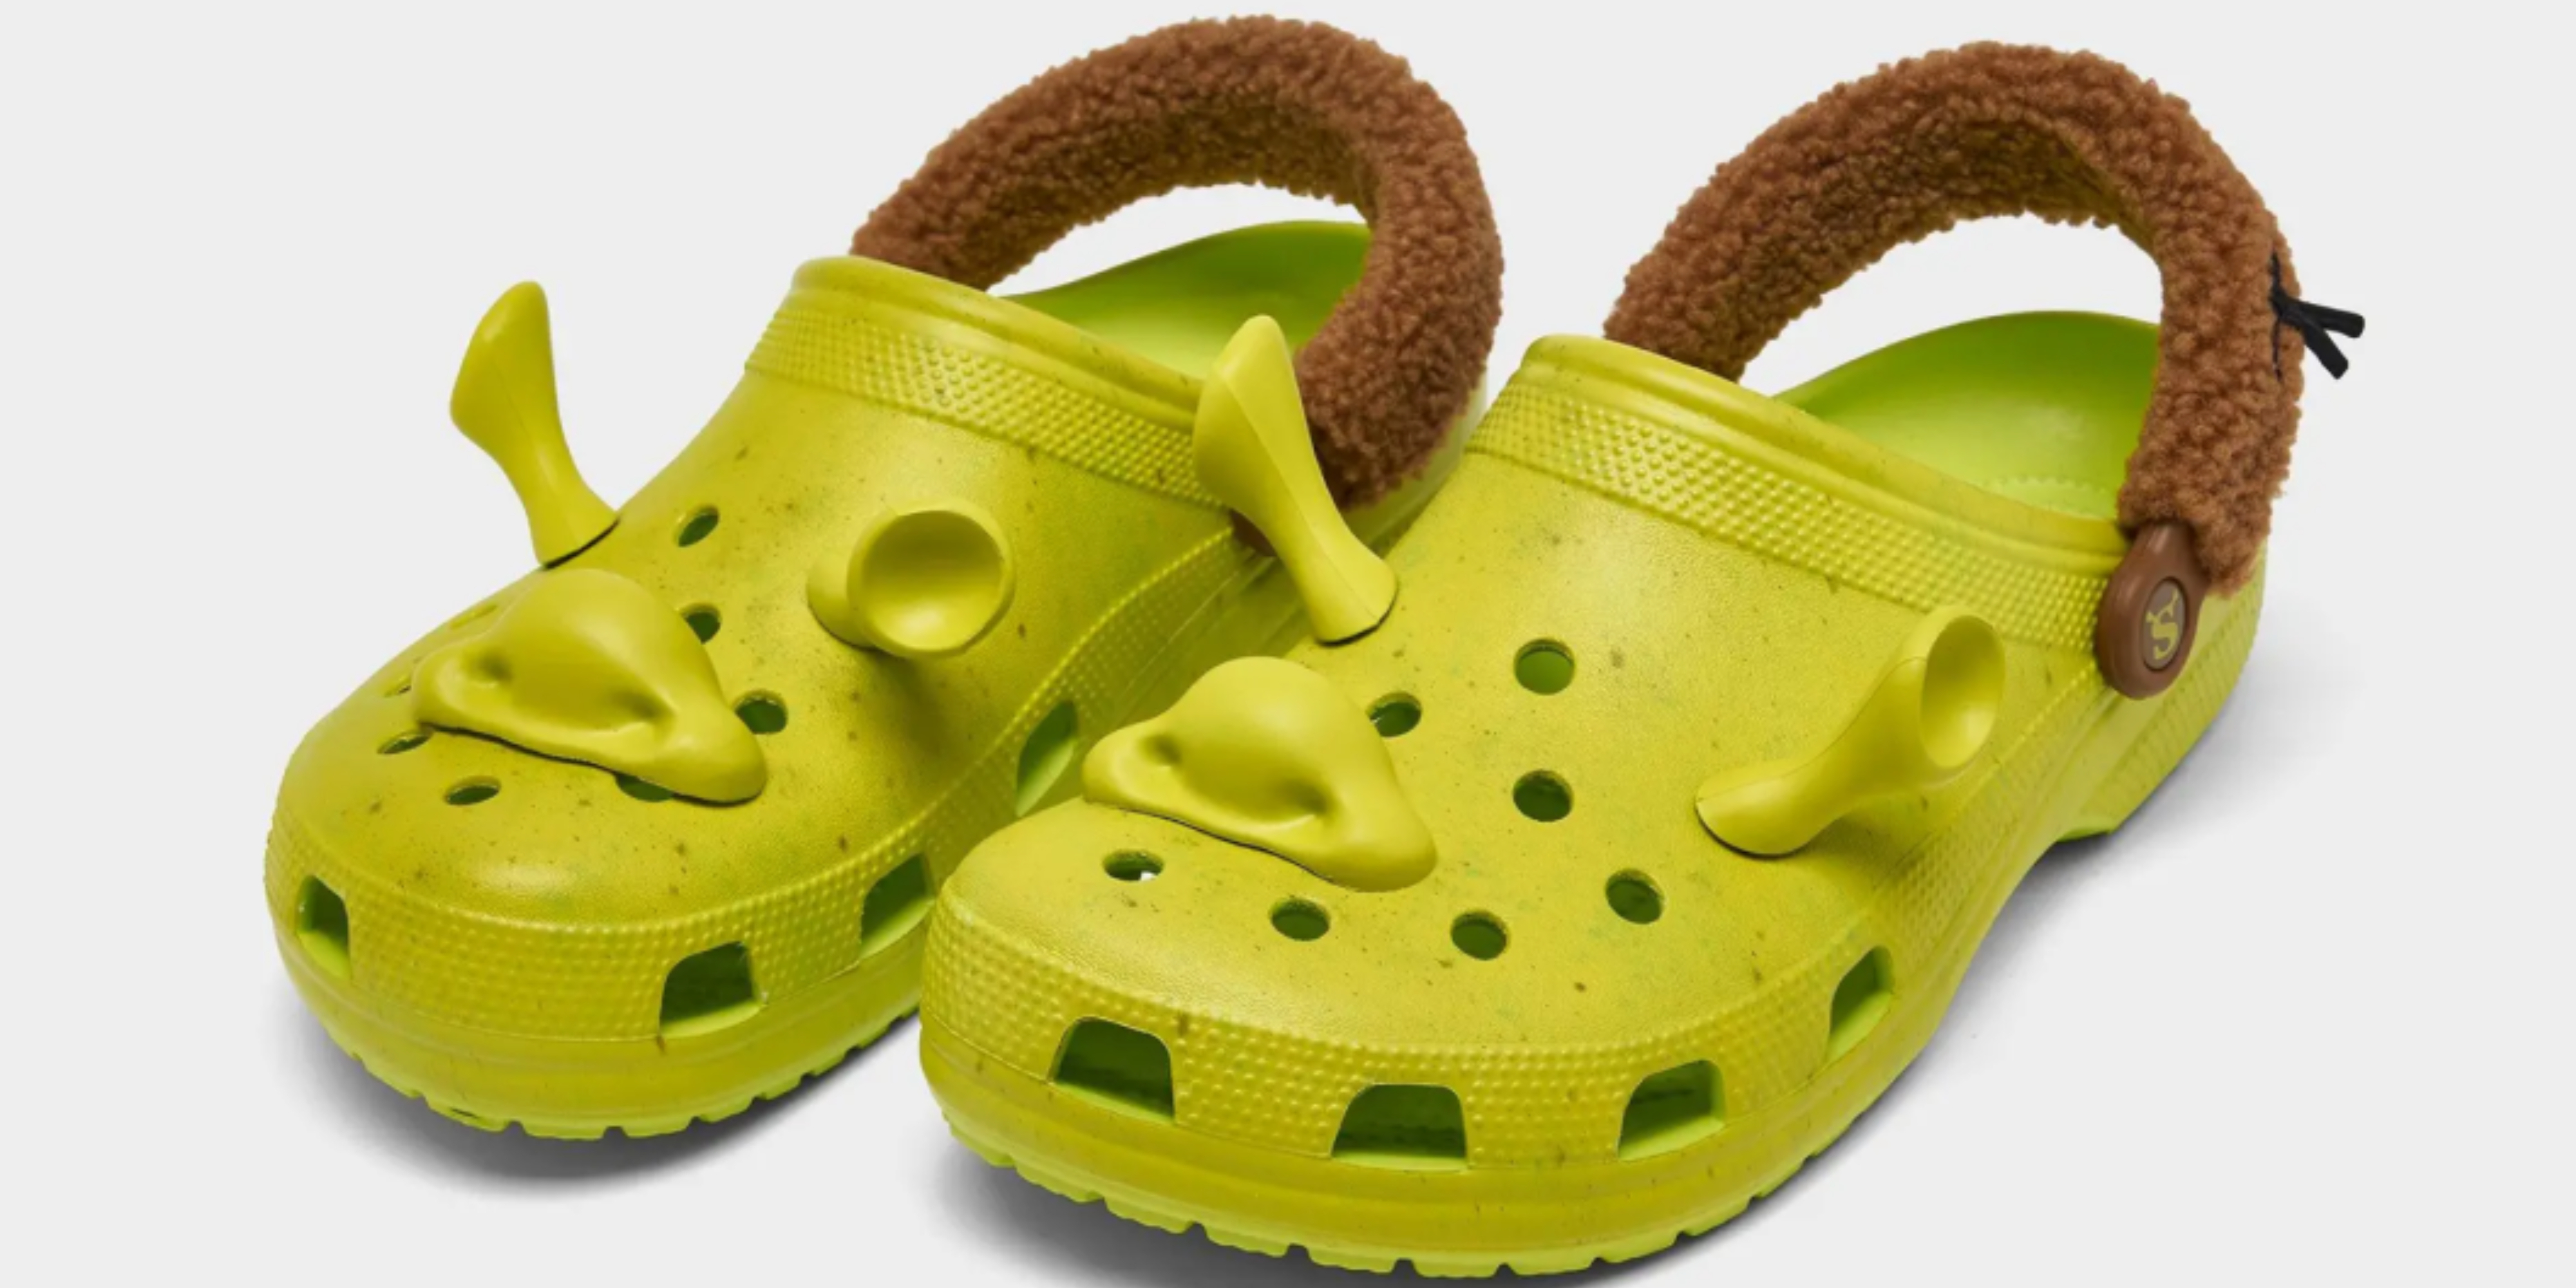 Crocs Introduce Shrek-themed Shoes! - Zinc 96.1 FM